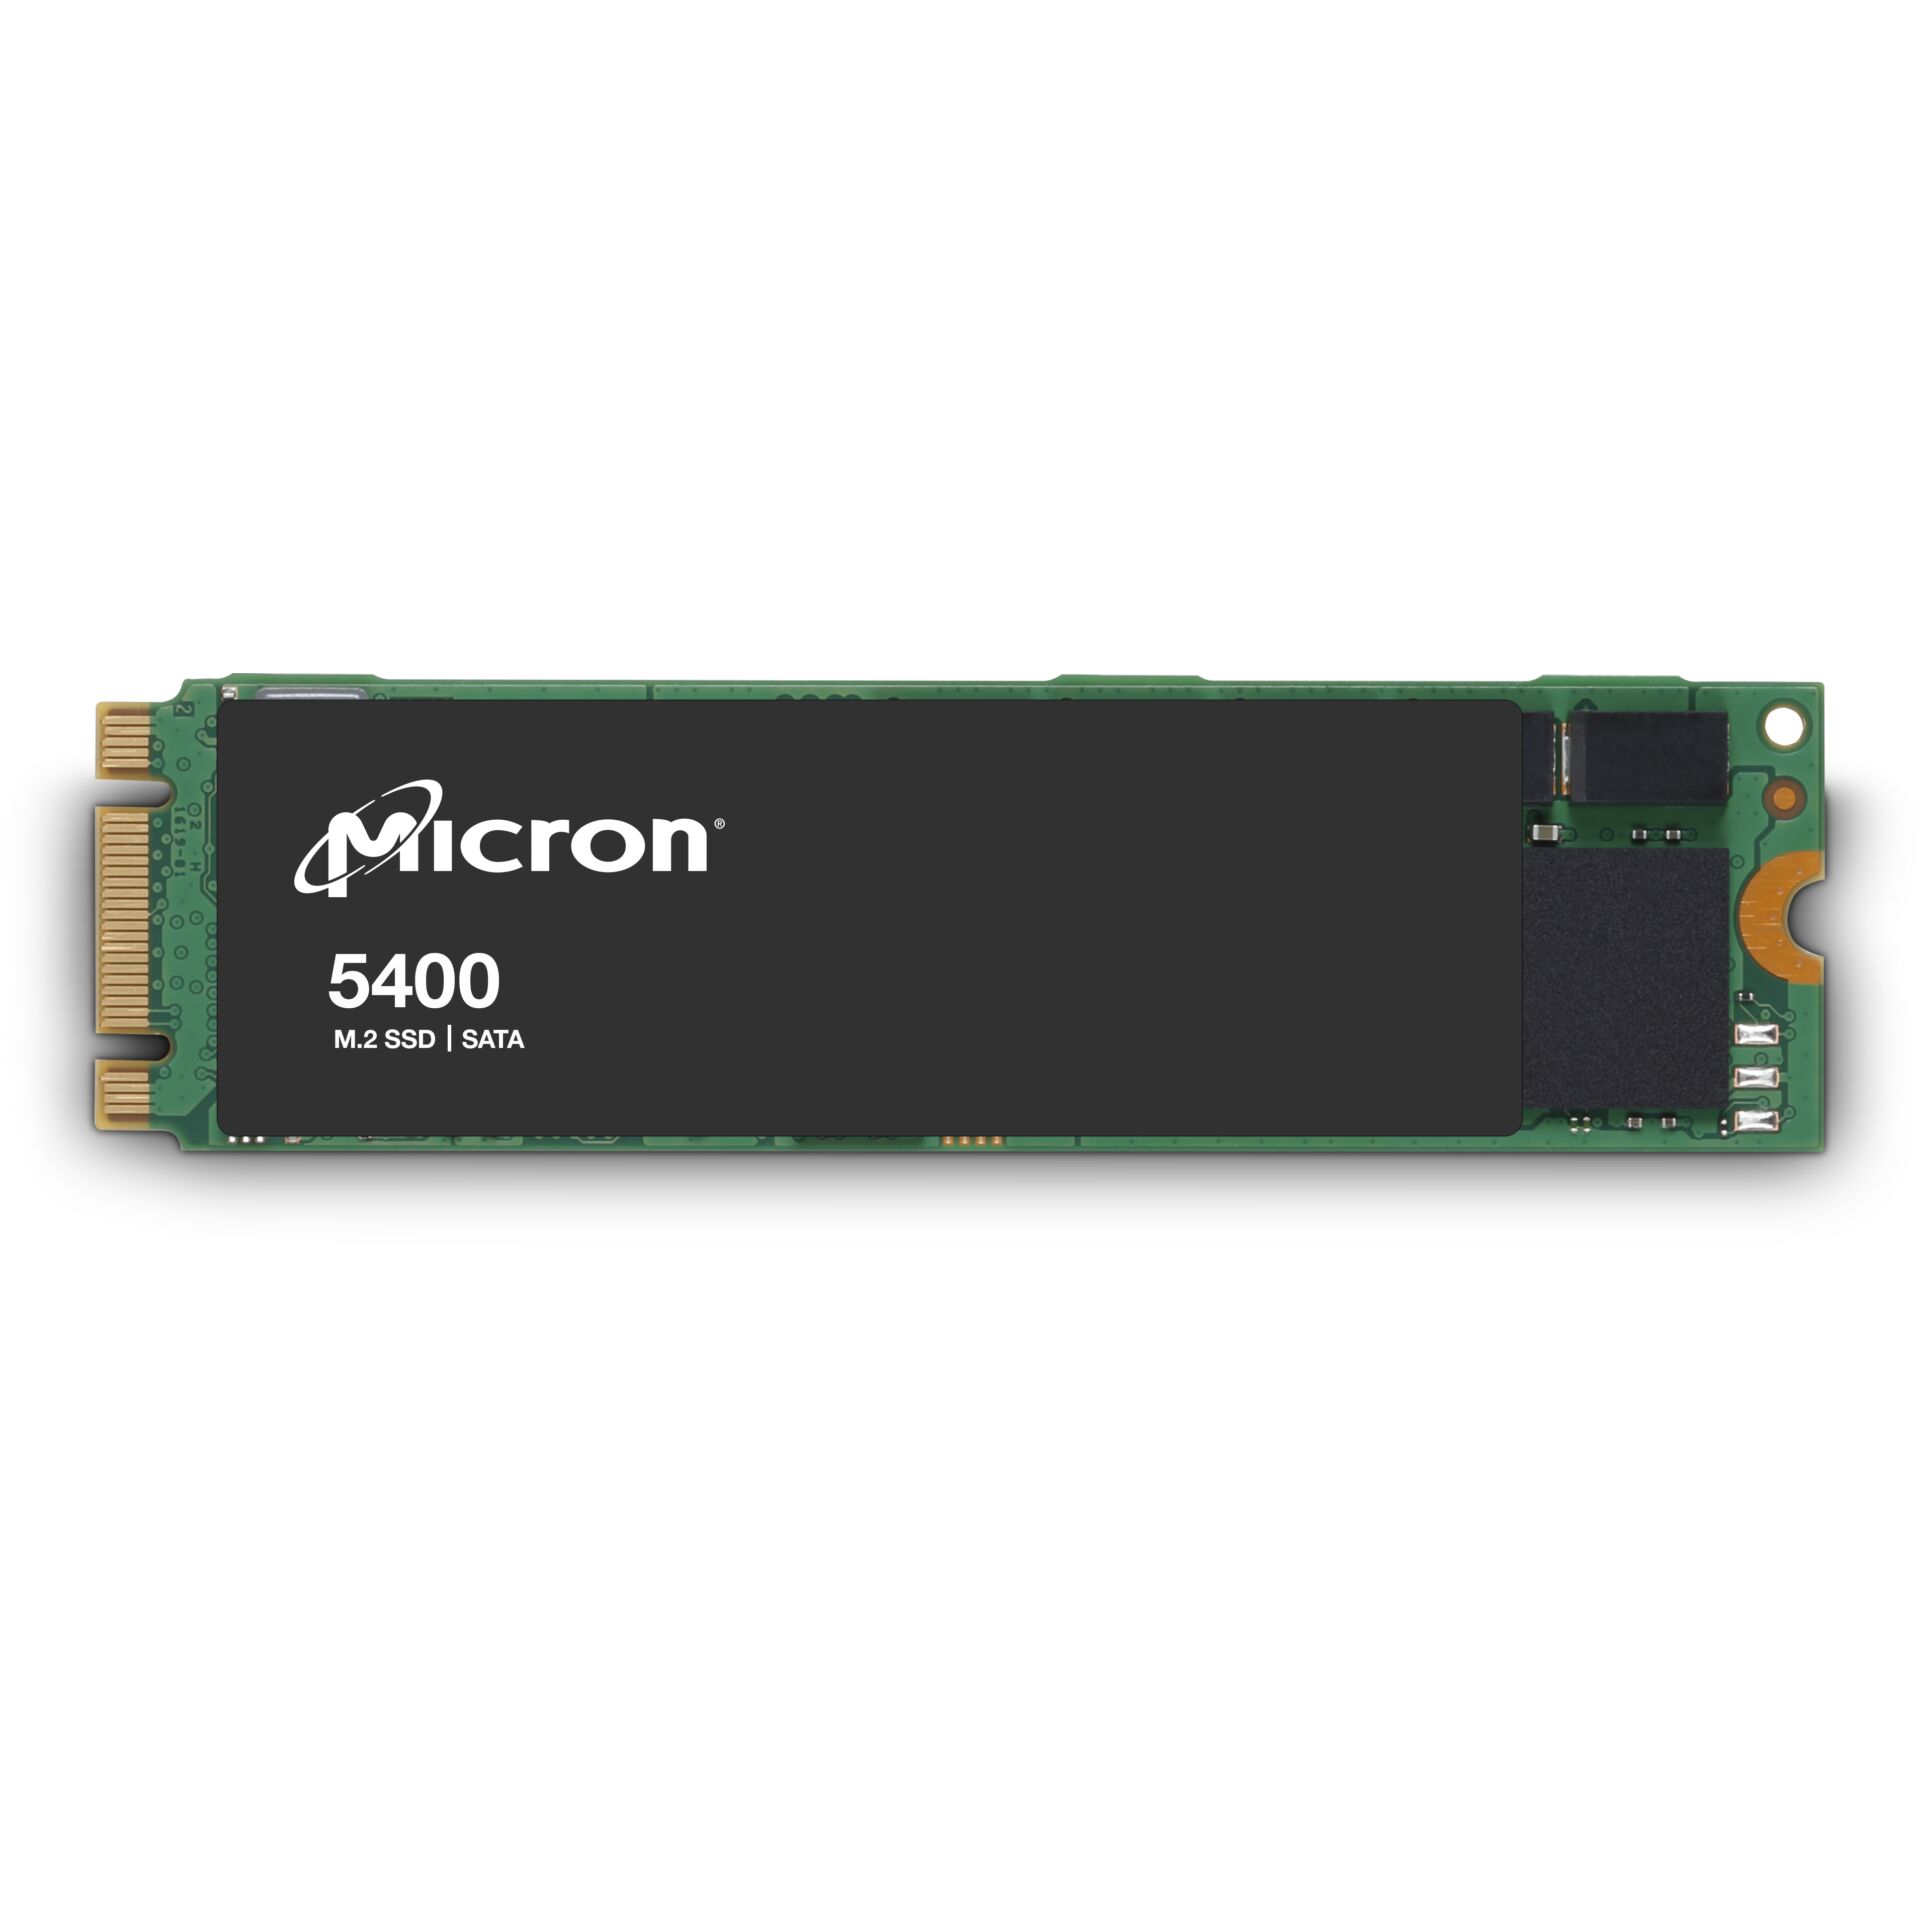 Micron 5400 BOOT           240GB SATA M.2 Non-SED SSD